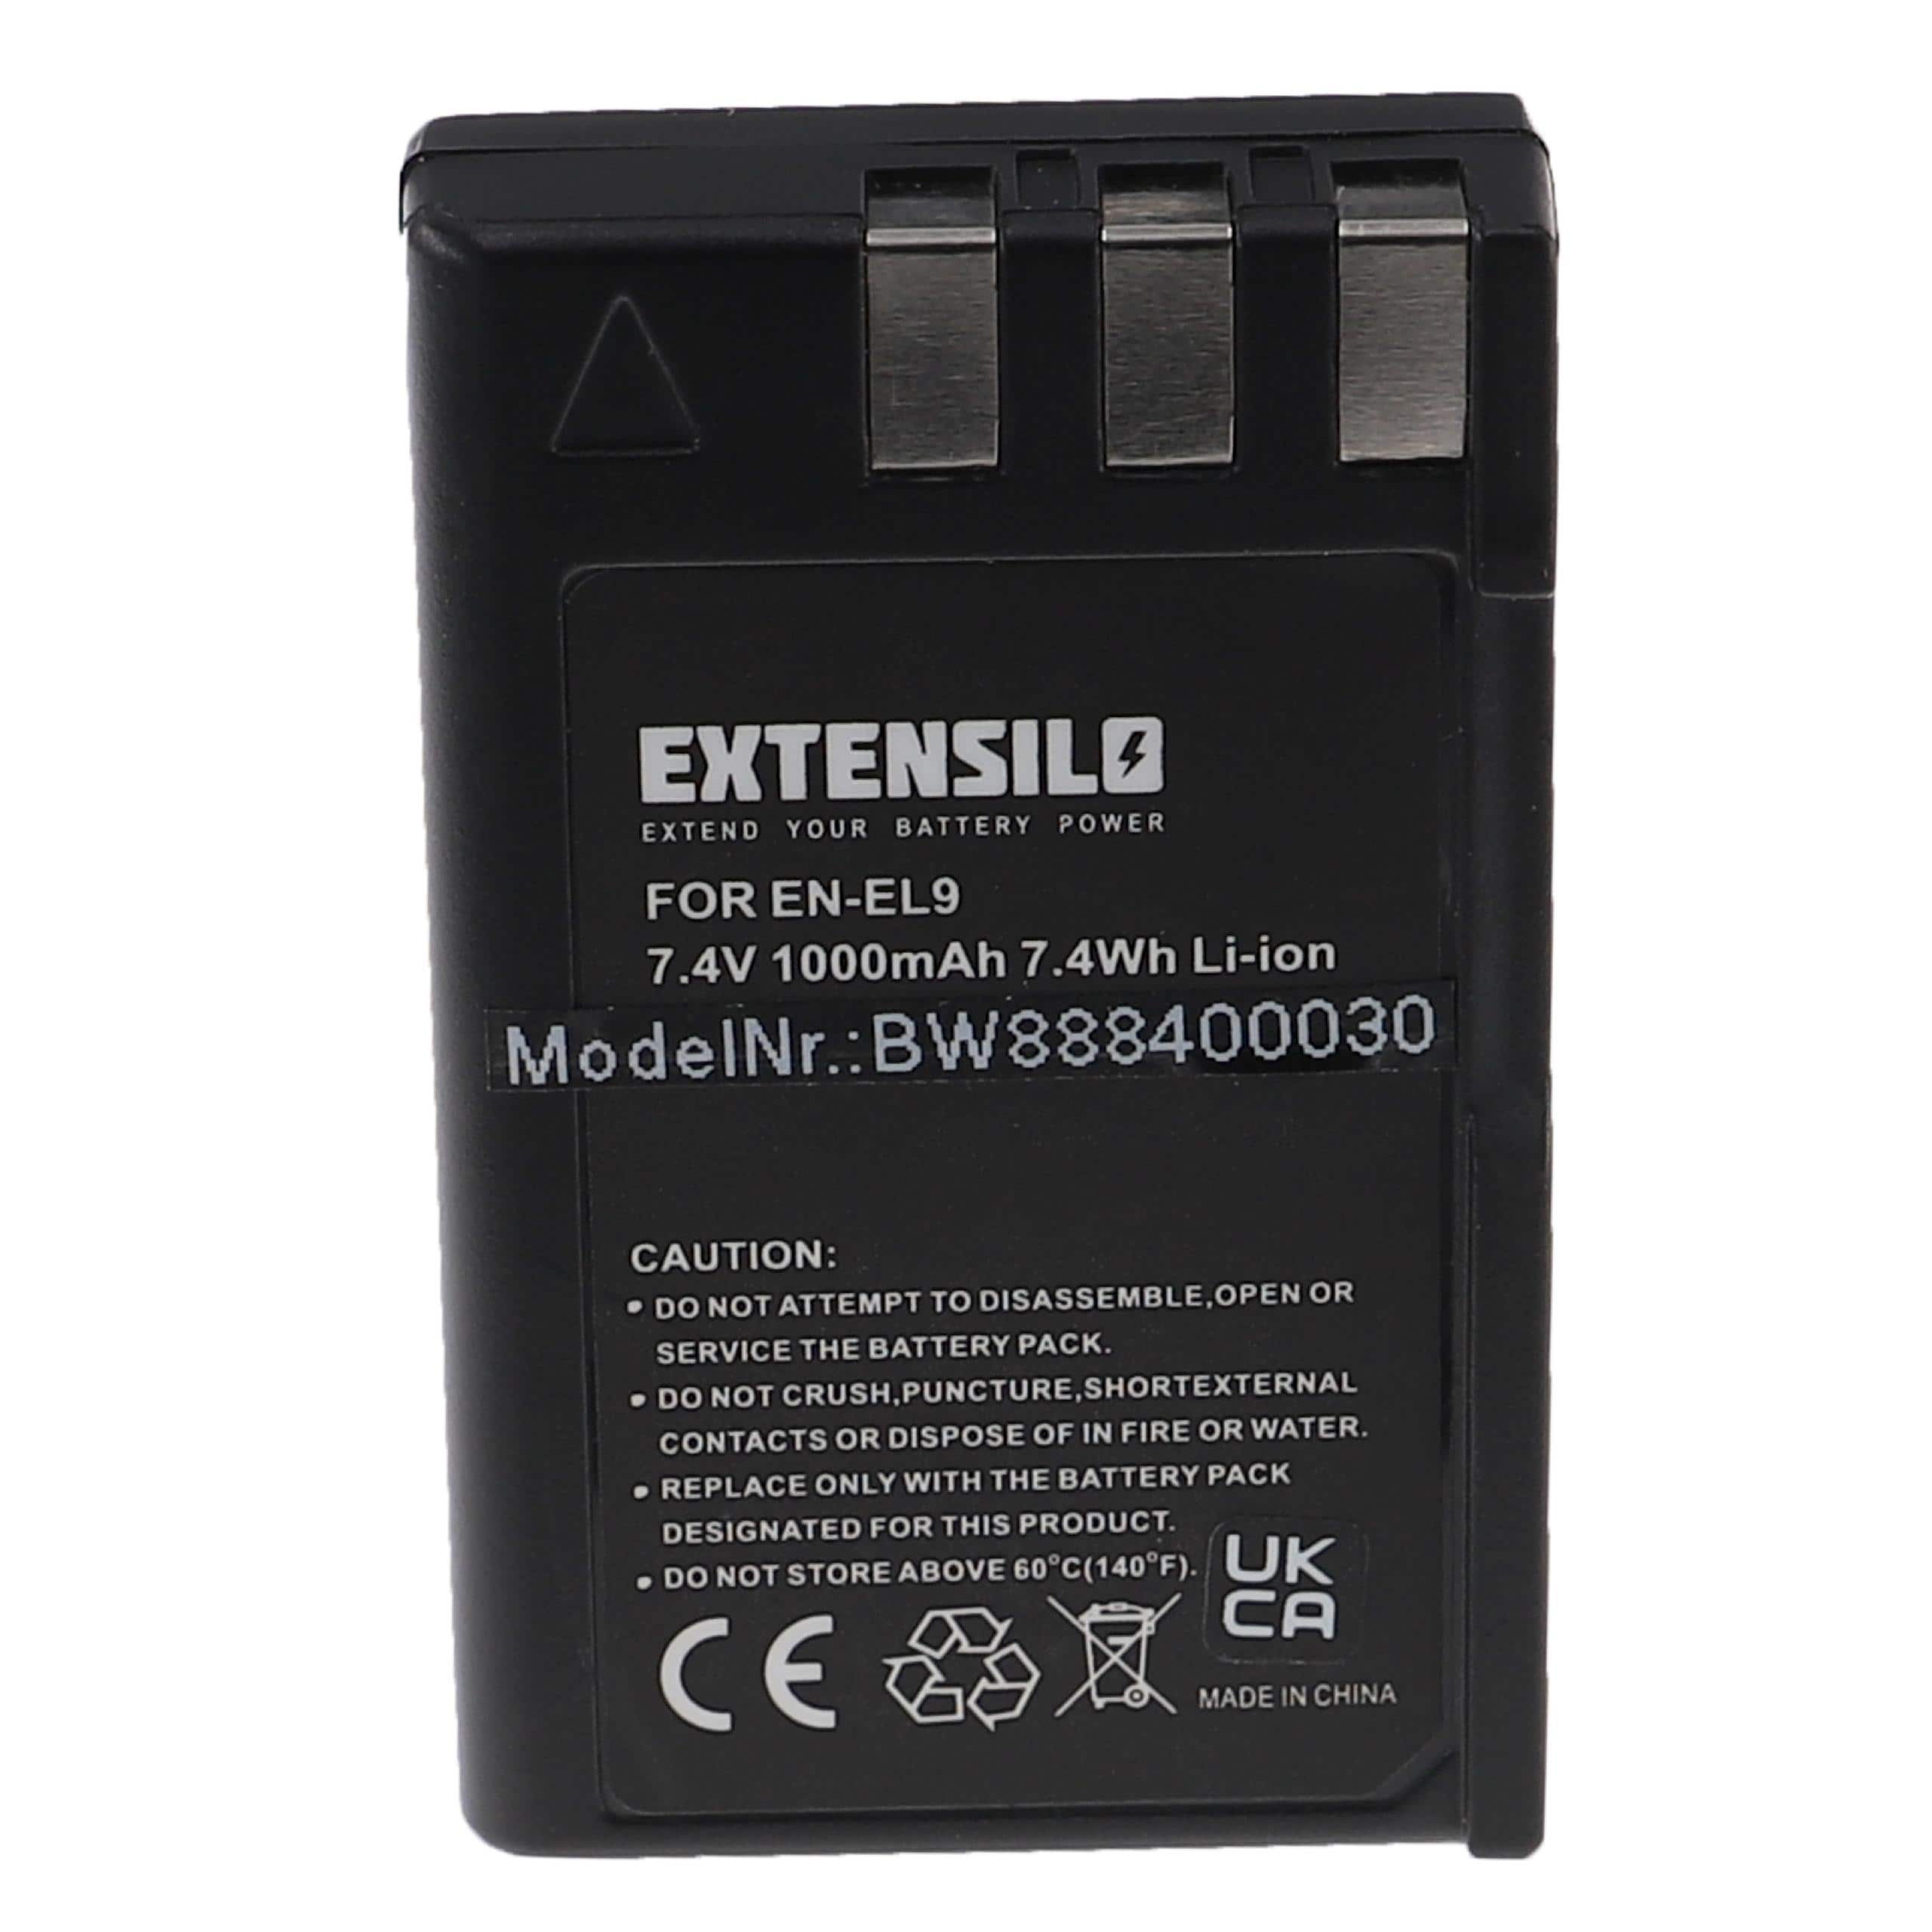 Batterie remplace Nikon EN-EL9E, EN-EL9 pour appareil photo - 1000mAh 7,4V Li-ion